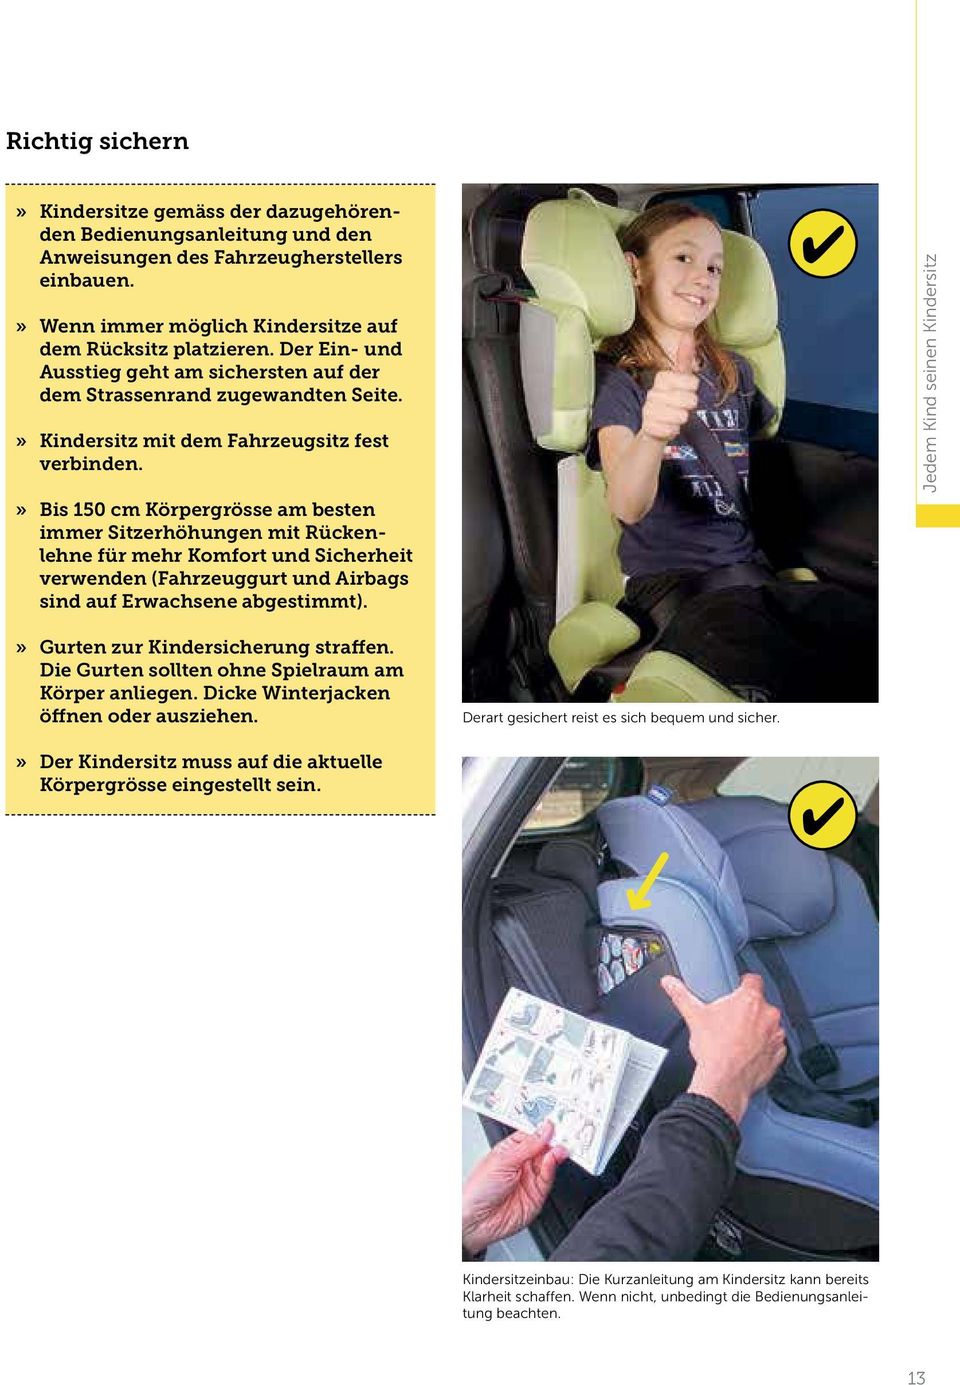 » Bis 150 cm Körpergrösse am besten immer Sitzerhöhun gen mit Rückenlehne für mehr Komfort und Sicherheit verwenden (Fahrzeuggurt und Airbags sind auf Erwachsene abgestimmt).